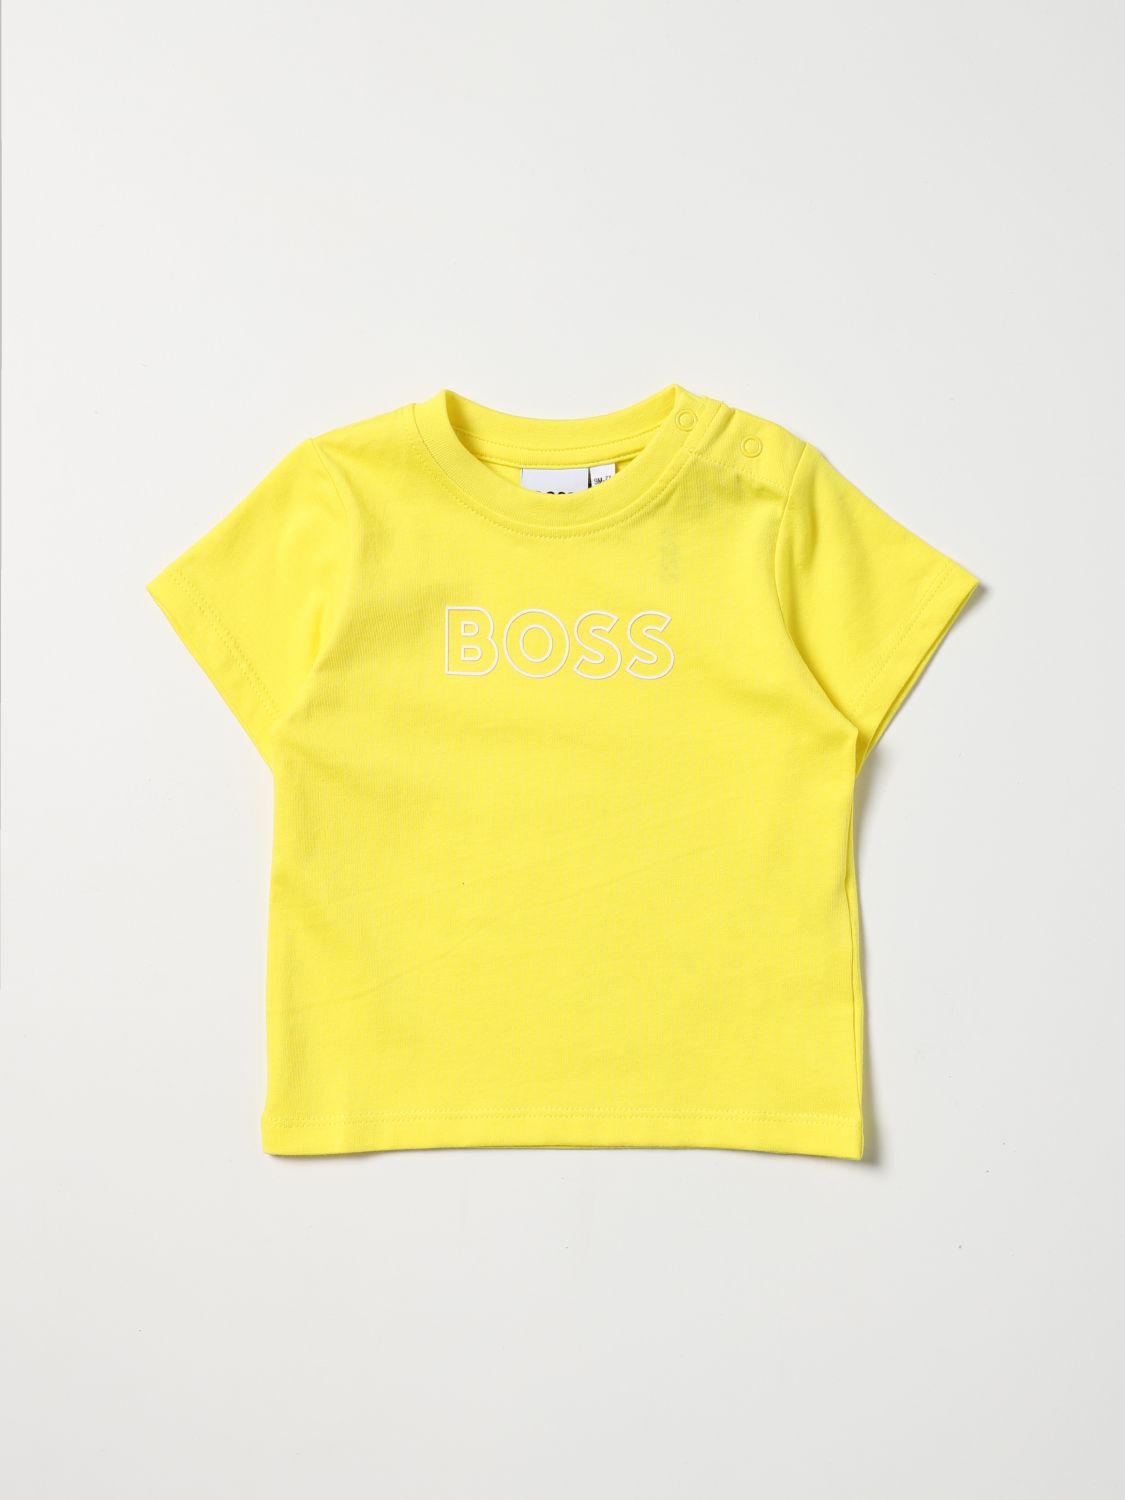 T-shirt Hugo Boss: Hugo Boss t-shirt for baby yellow 1